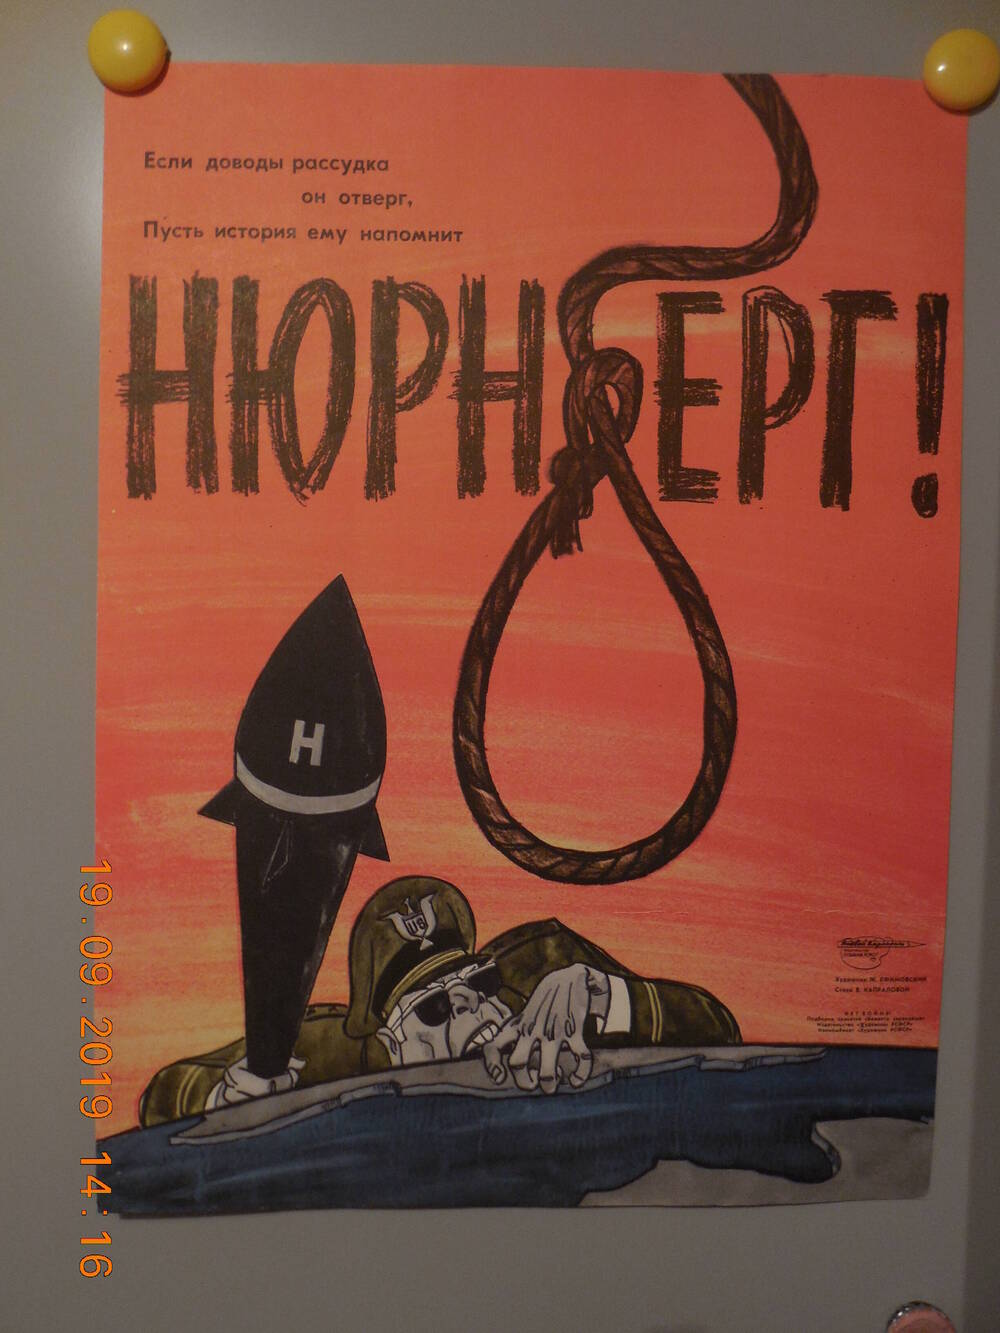 Плакат из подборки сатирических плакатов творческого объединения Боевой карандаш - НЕТ ВОЙНЕ
Нюрнберг